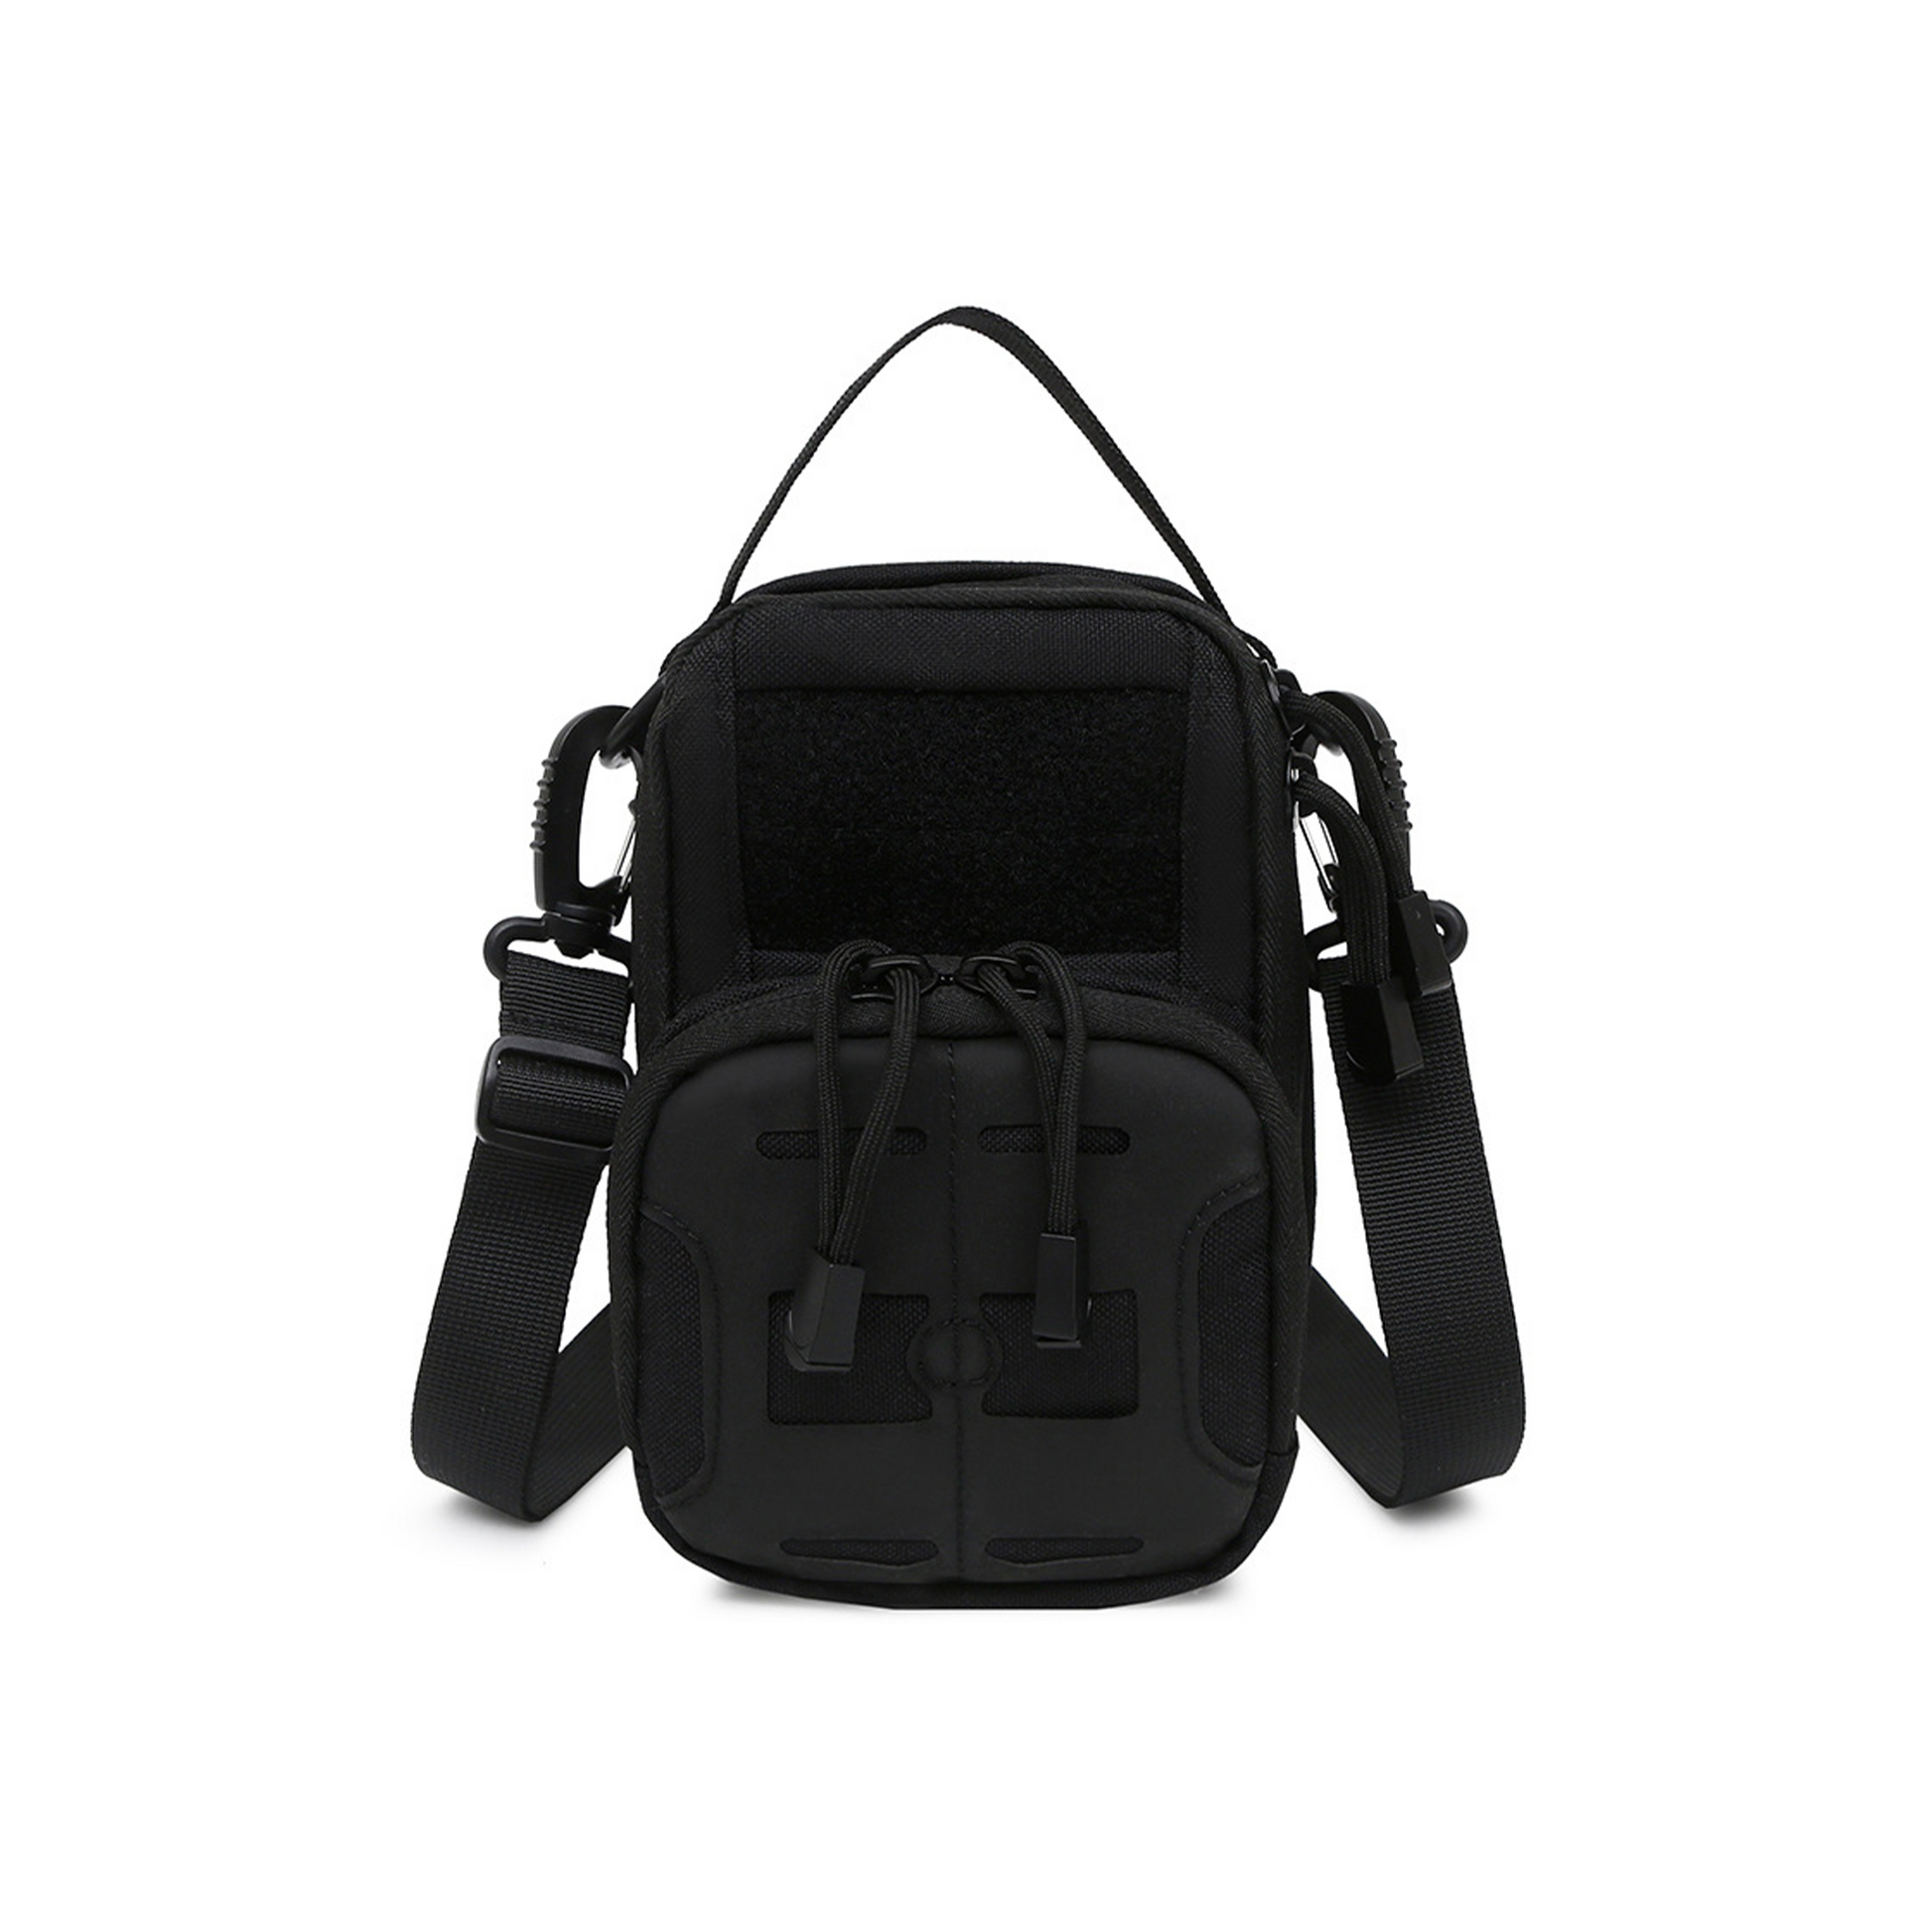 IJ Tactical Easy Carry Cross Shoulder Tactical Bag